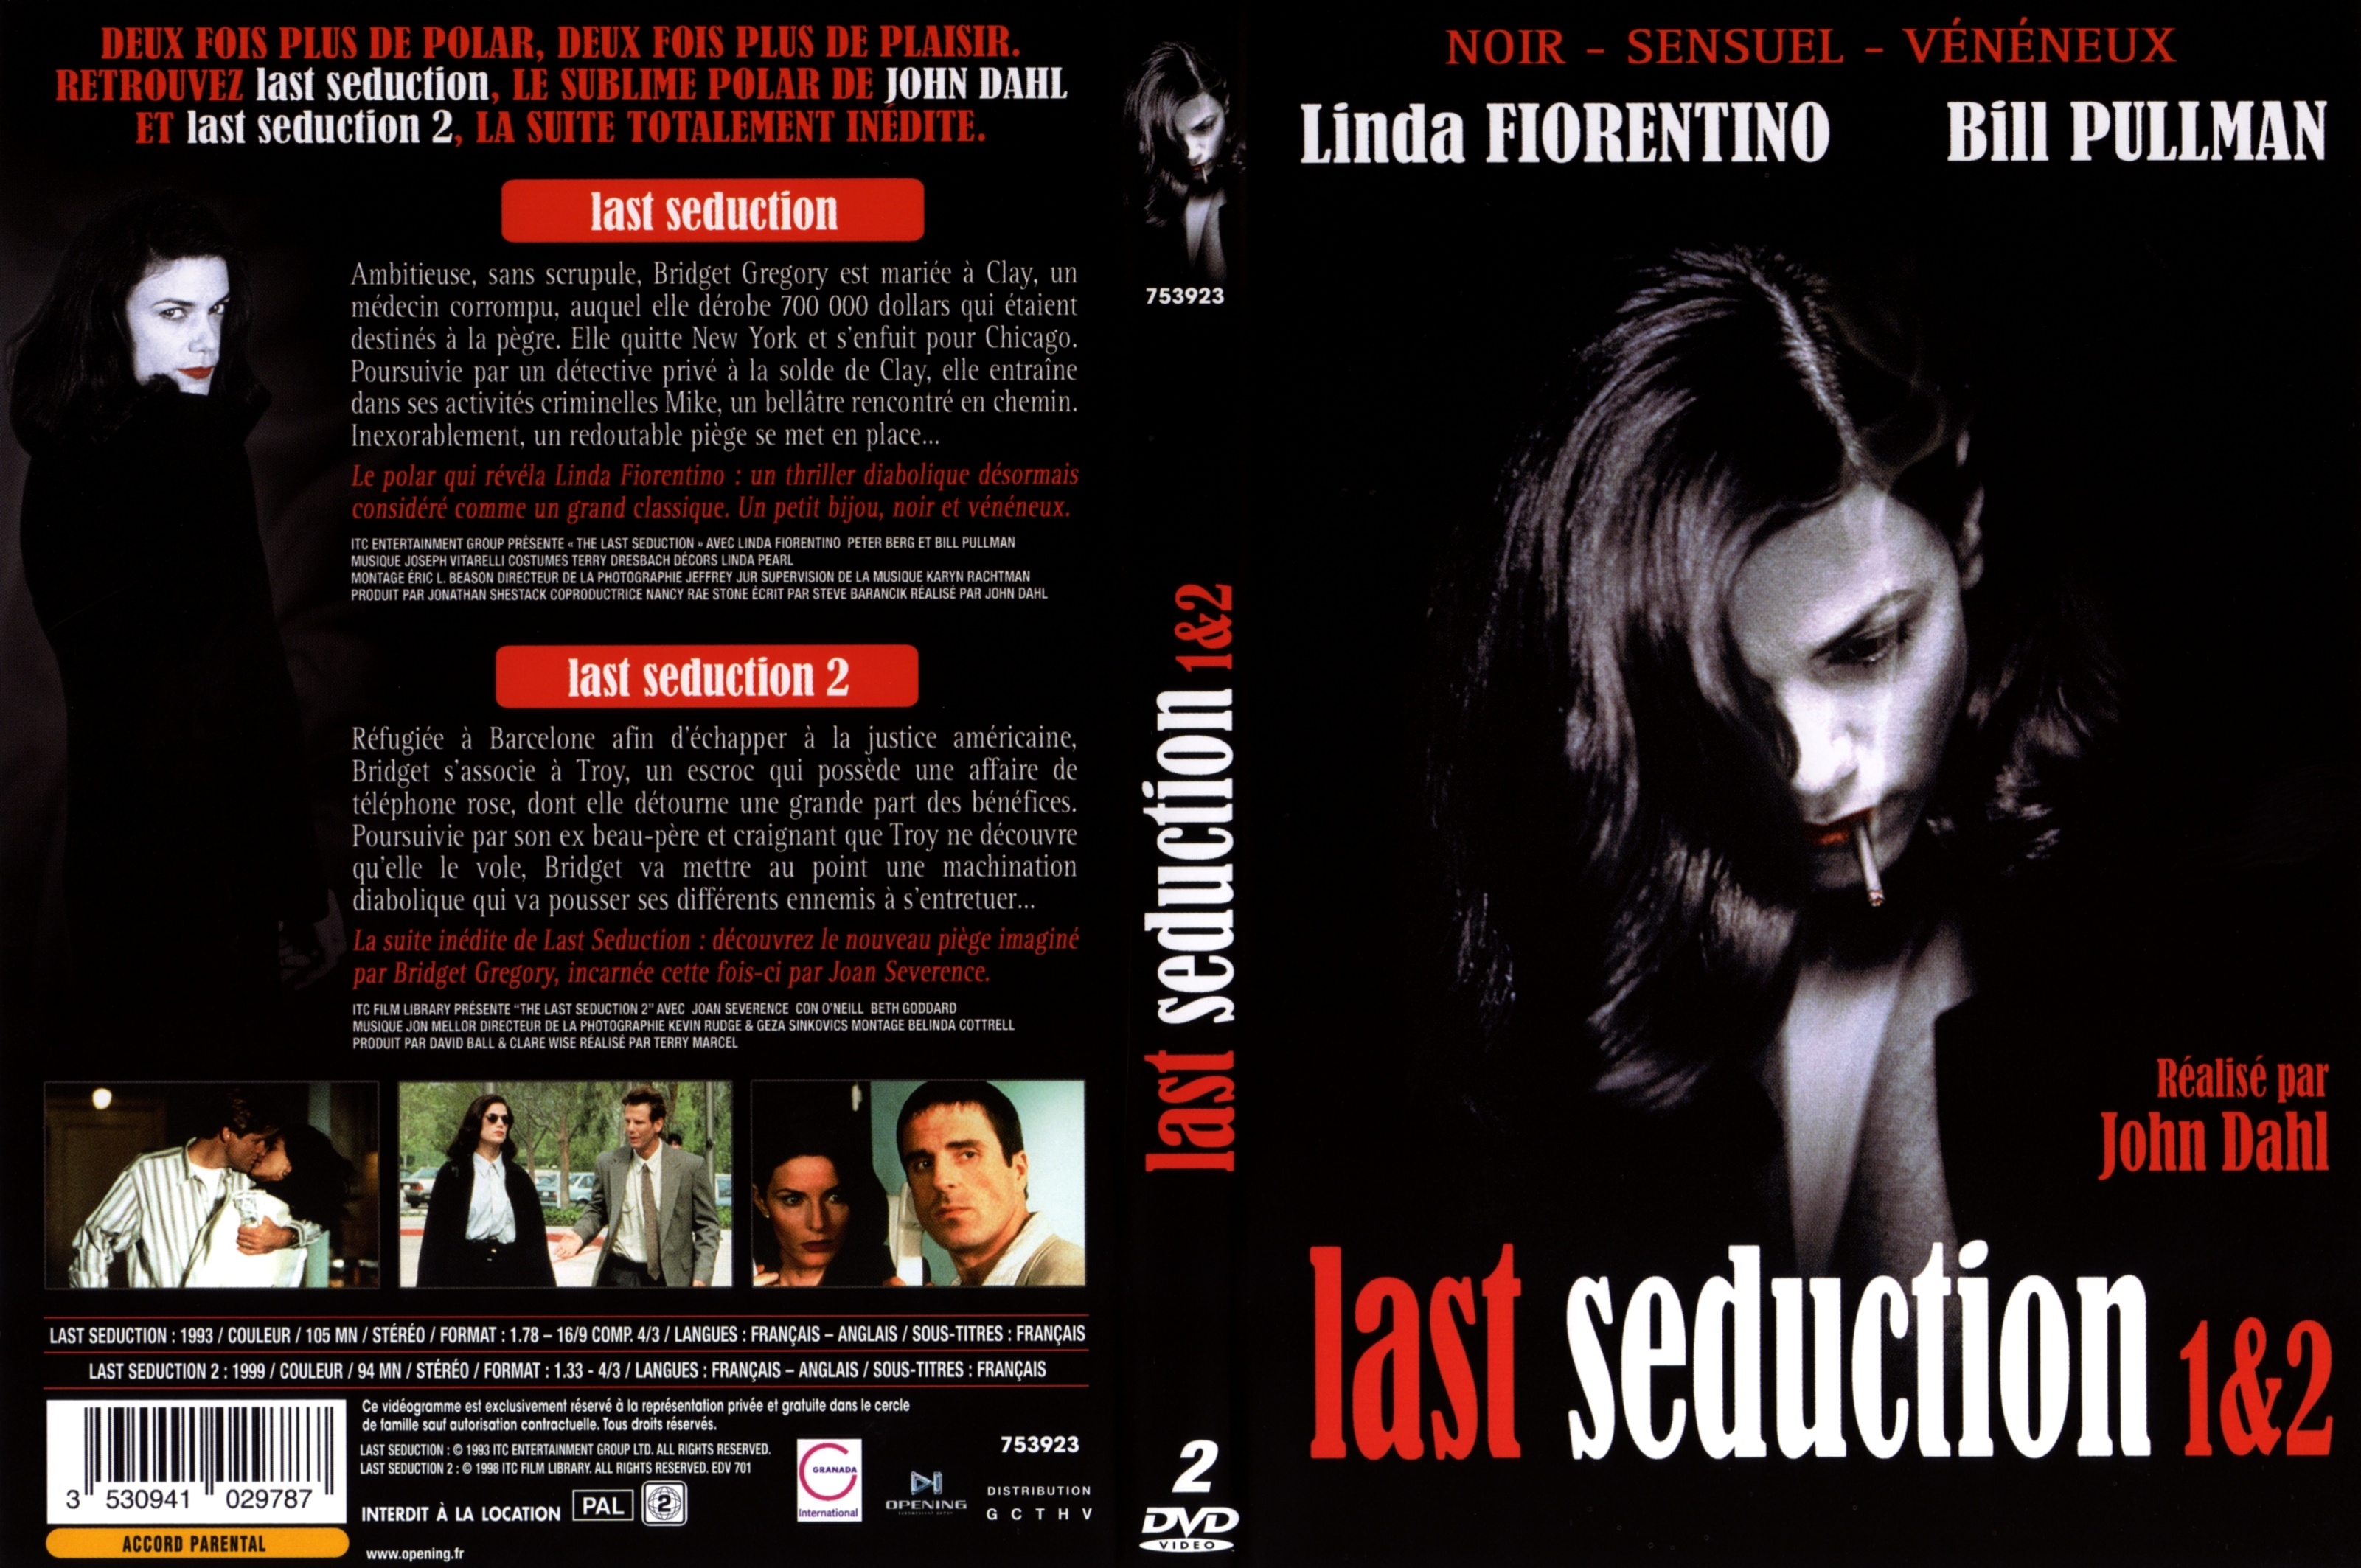 Jaquette DVD Last seduction 1 et 2